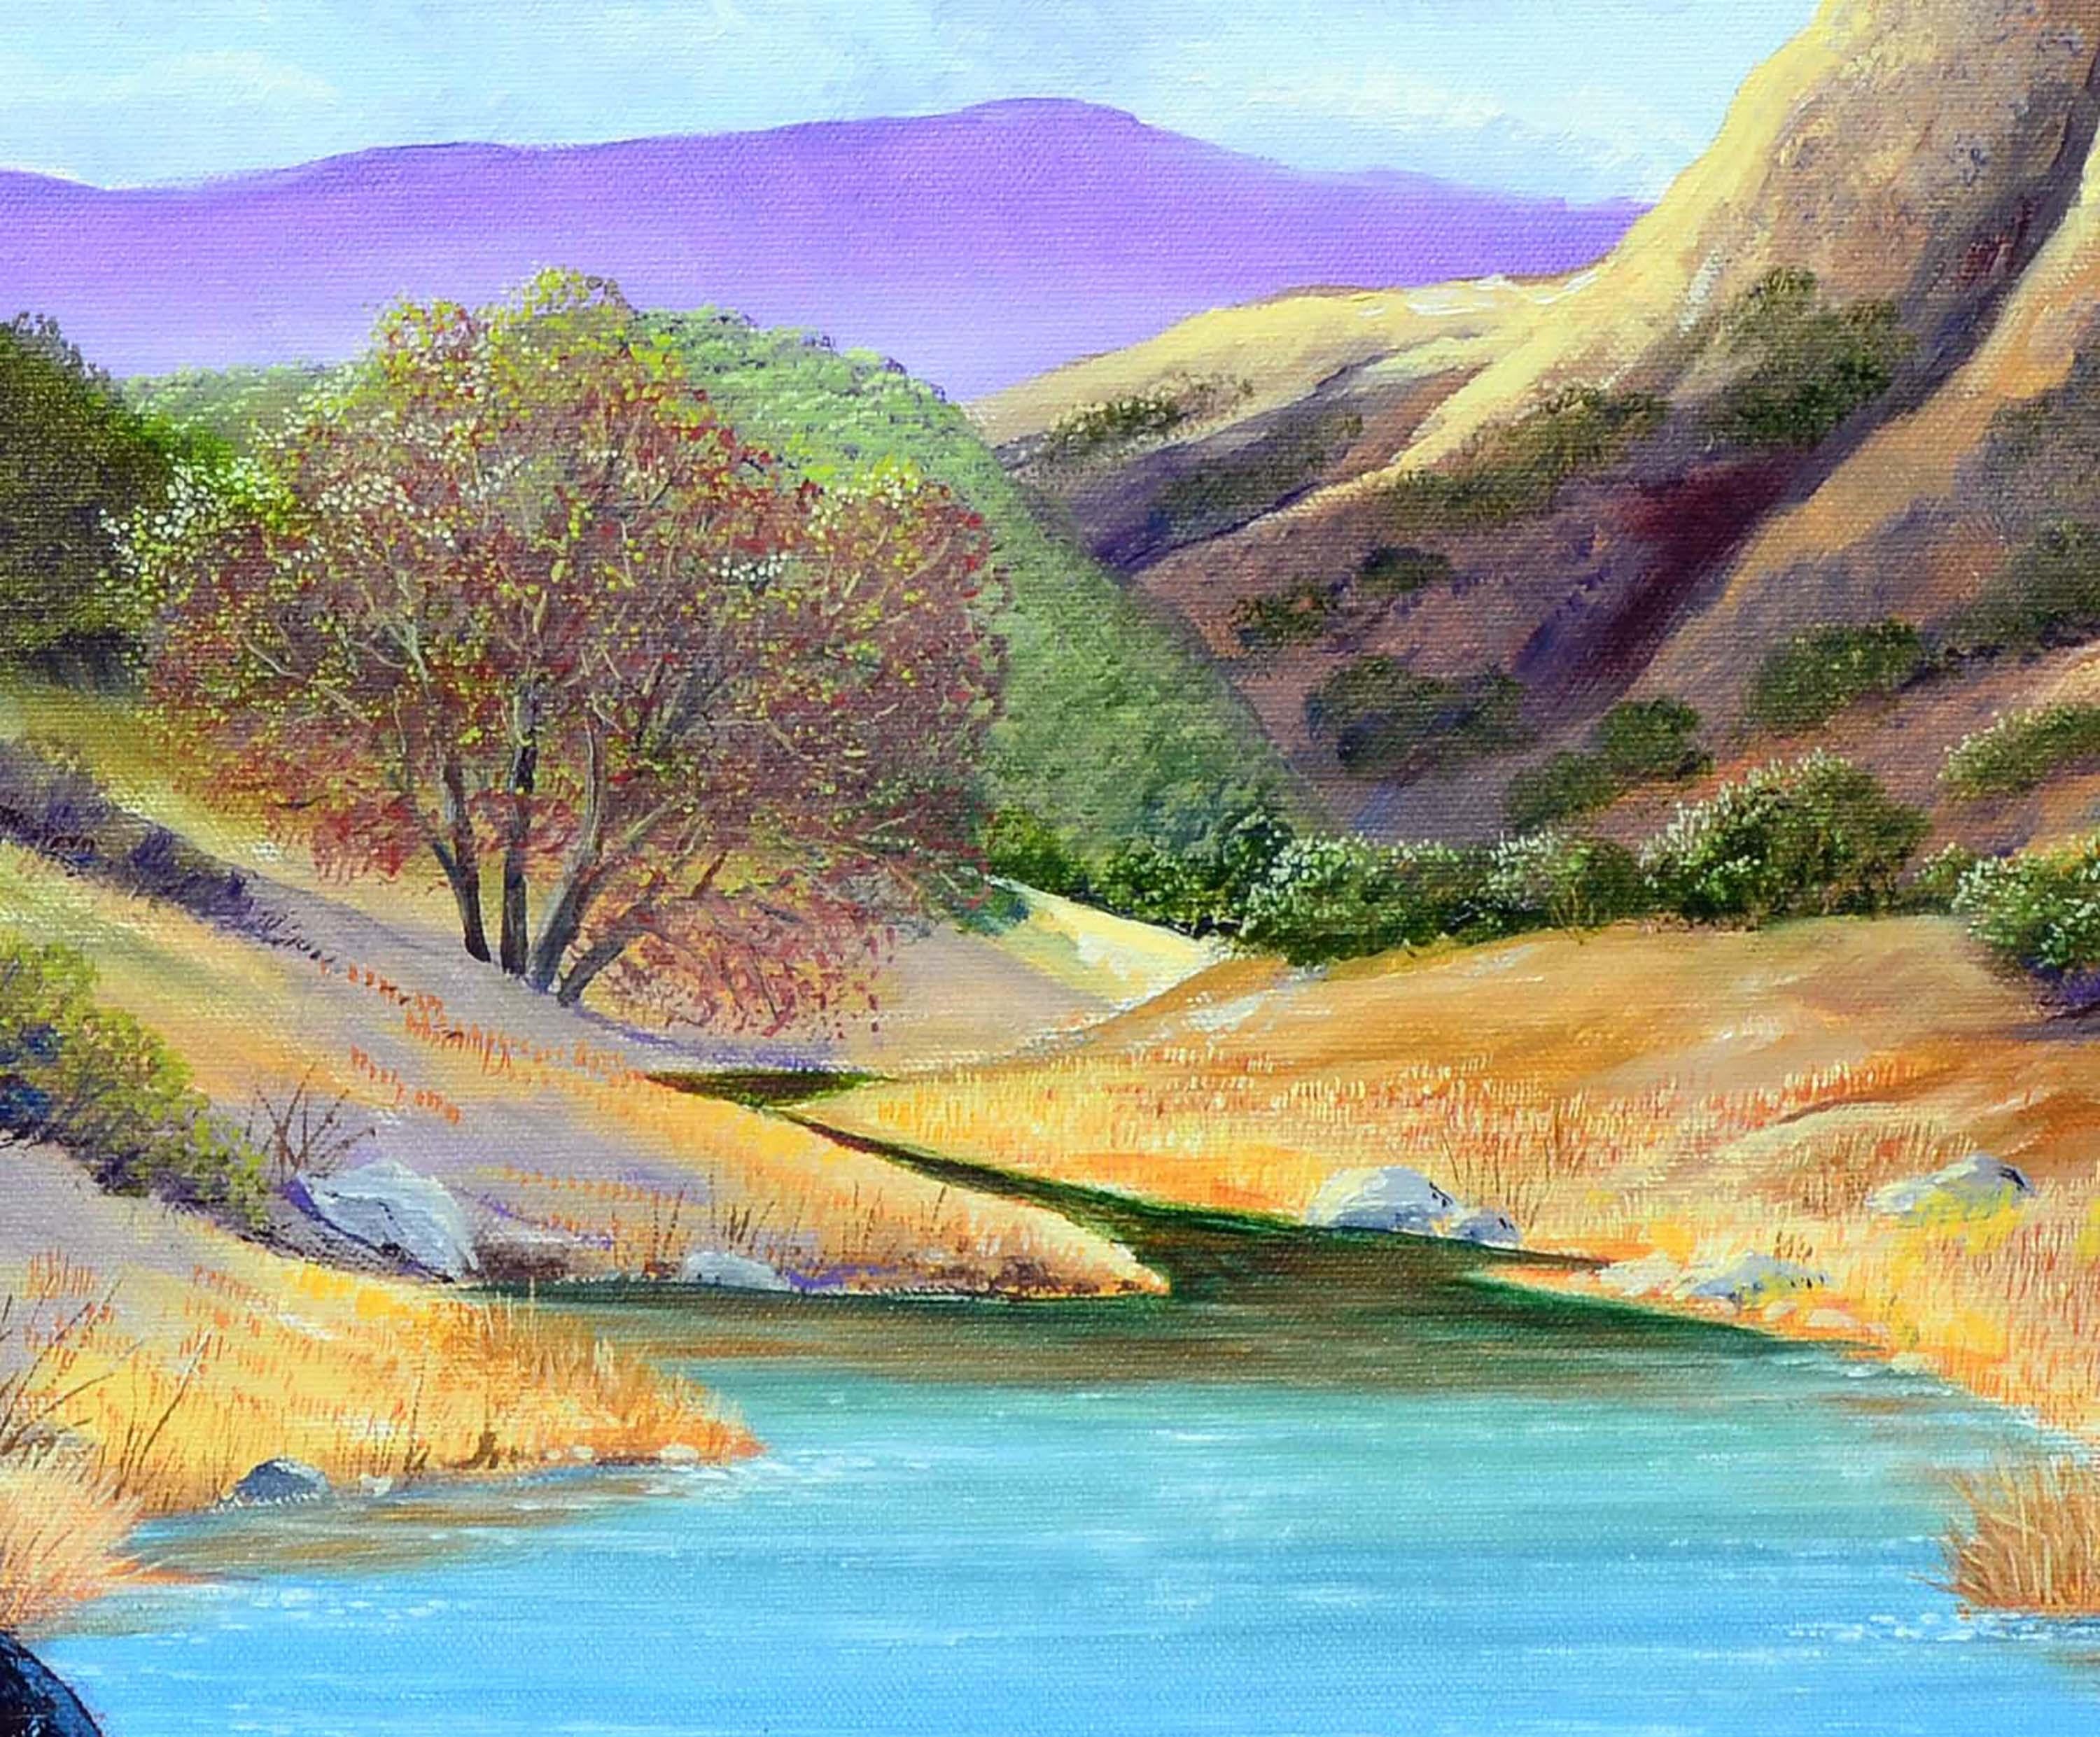 Mount Hamilton Realistische Landschaft (Grau), Landscape Painting, von Luke Stamos